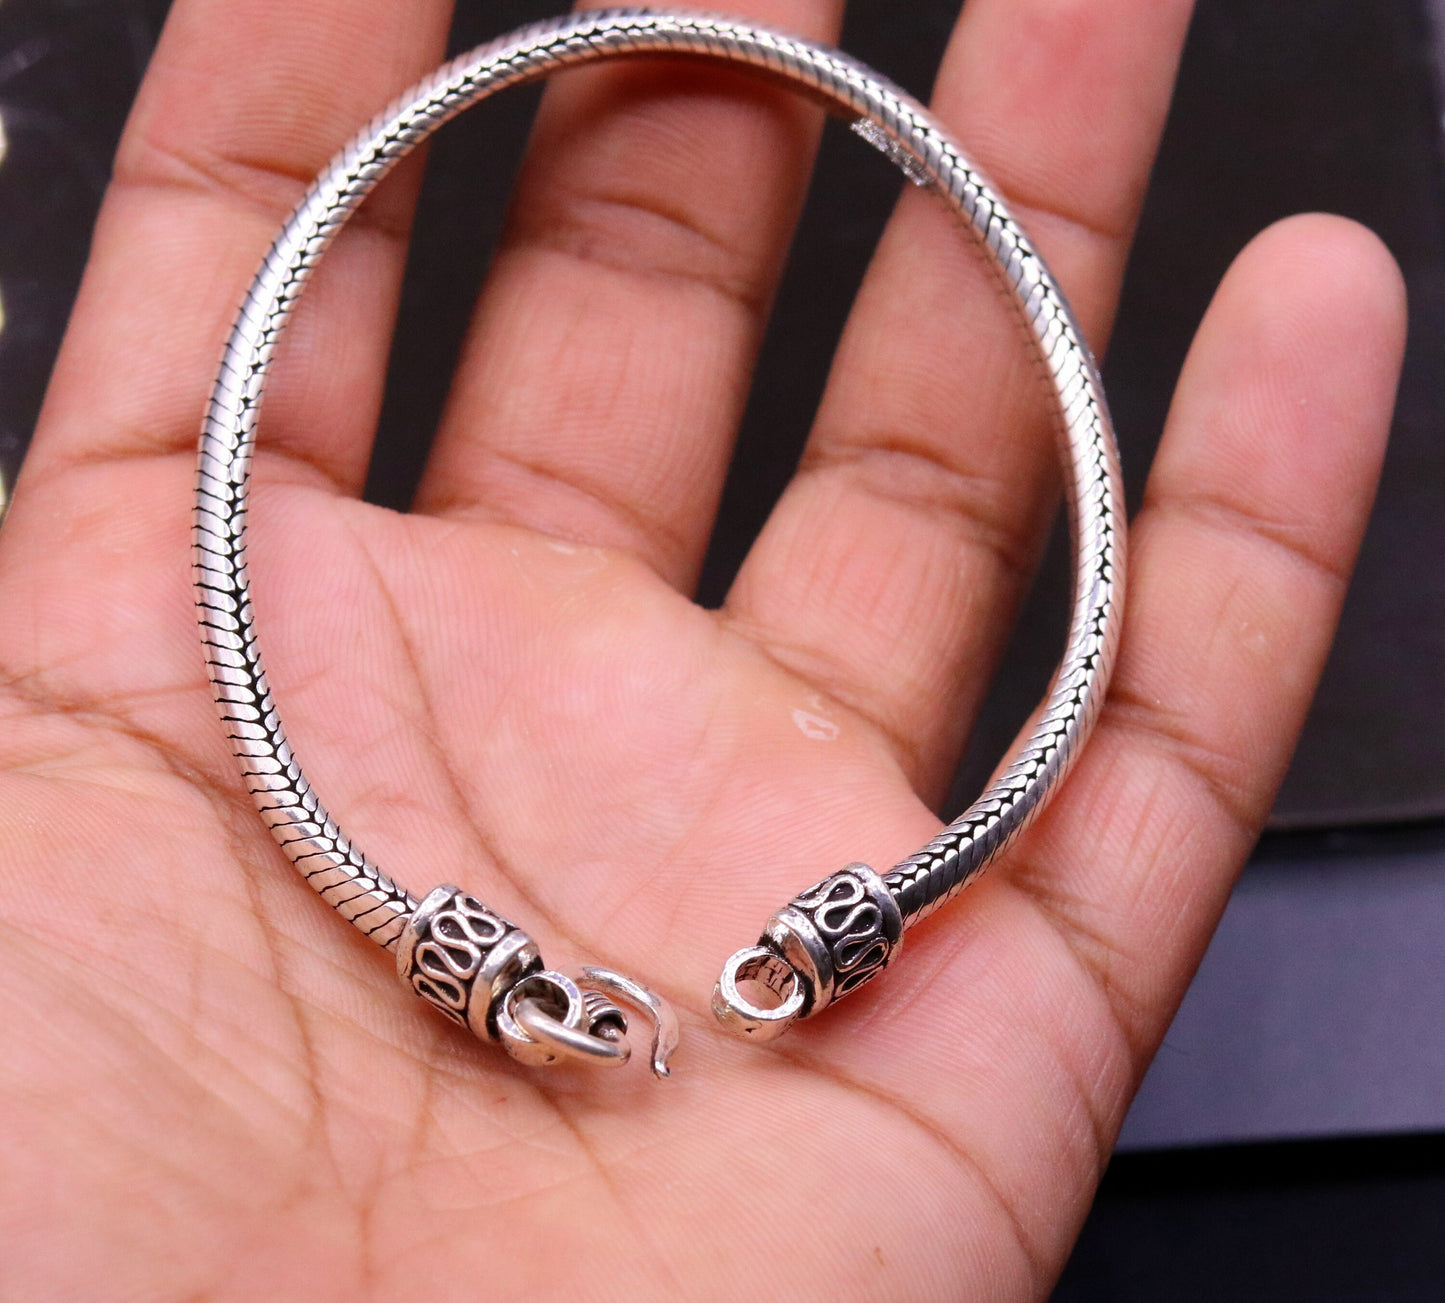 8.7 inches 6 mm 925 sterling silver handmade snake chain bracelet D shape chain bracelet half round snake chain bracelet fro unisex sbr150 - TRIBAL ORNAMENTS